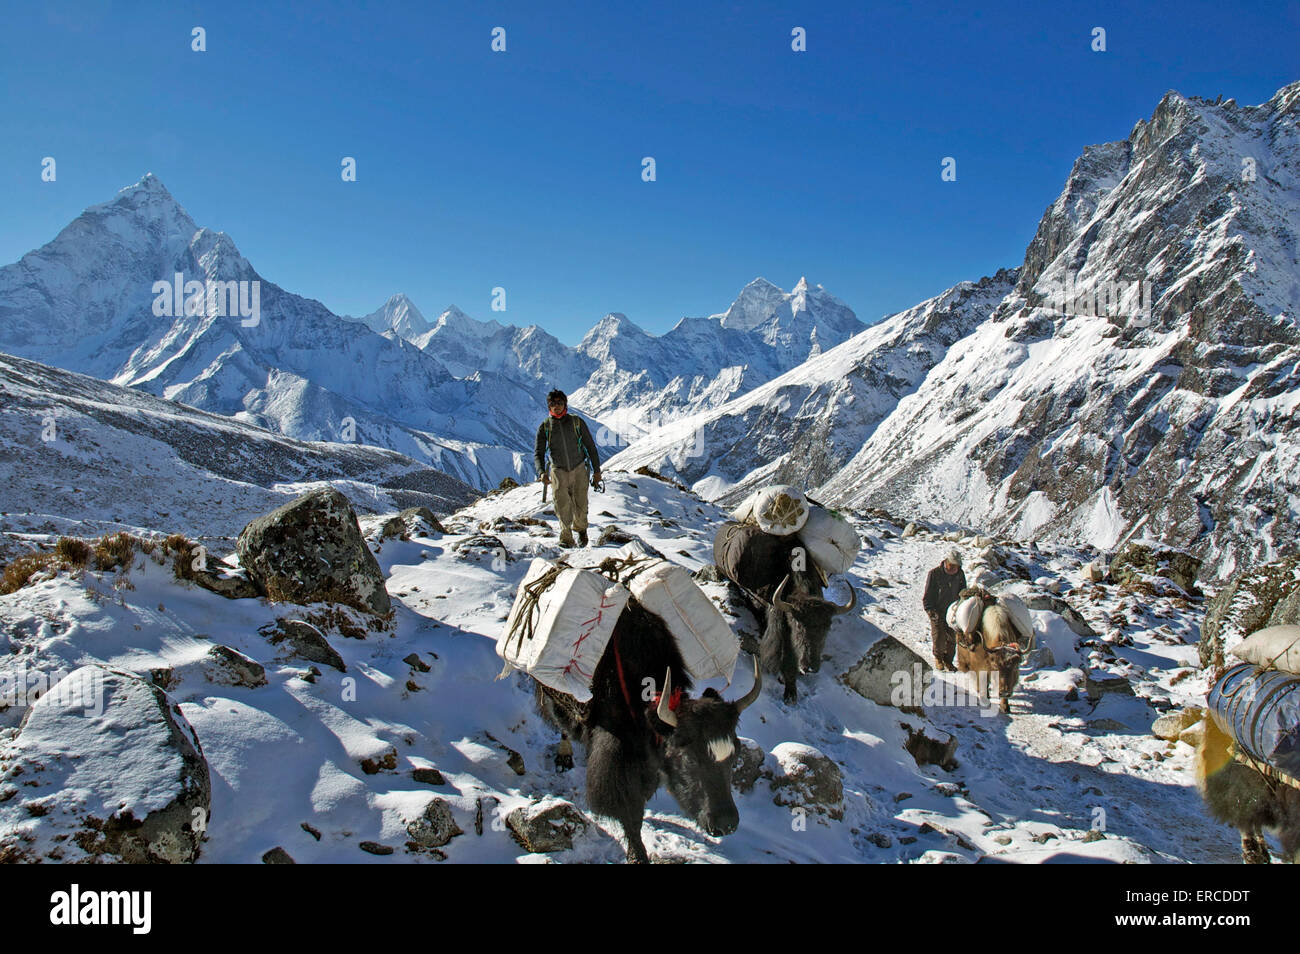 Une Népalaise bagagiste conduit une équipe de yaks à travers un paysage de l'Himalaya couvert de neige. Banque D'Images